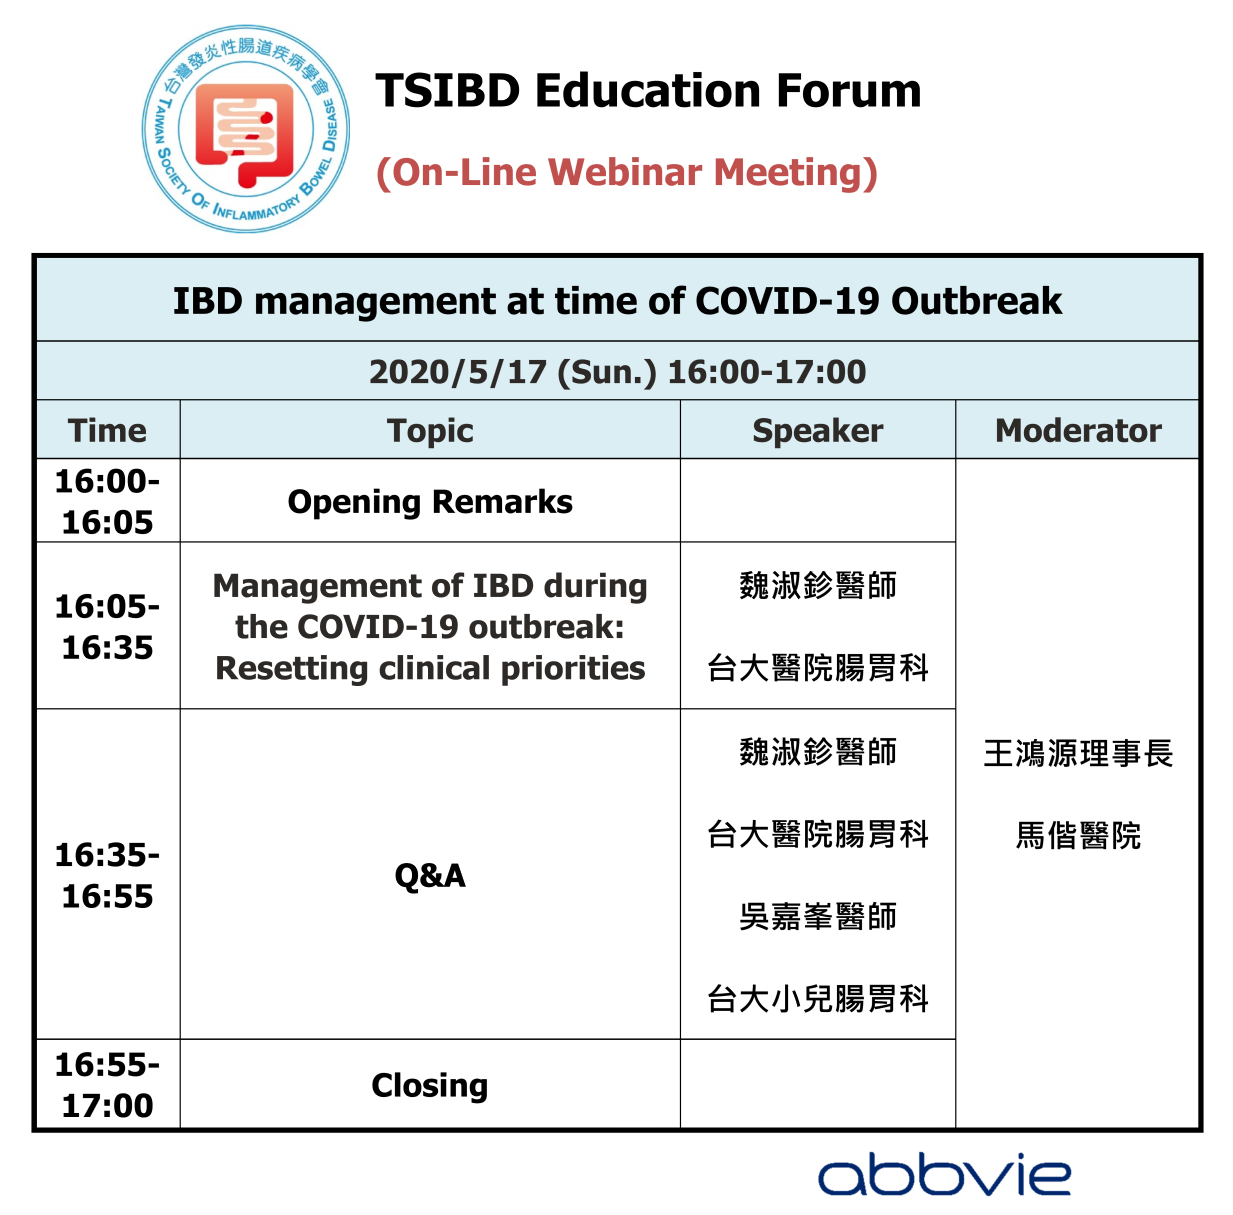 2020 5/17 TSIBD 2020 On-Line Webinar Series 1 (Education Forum)